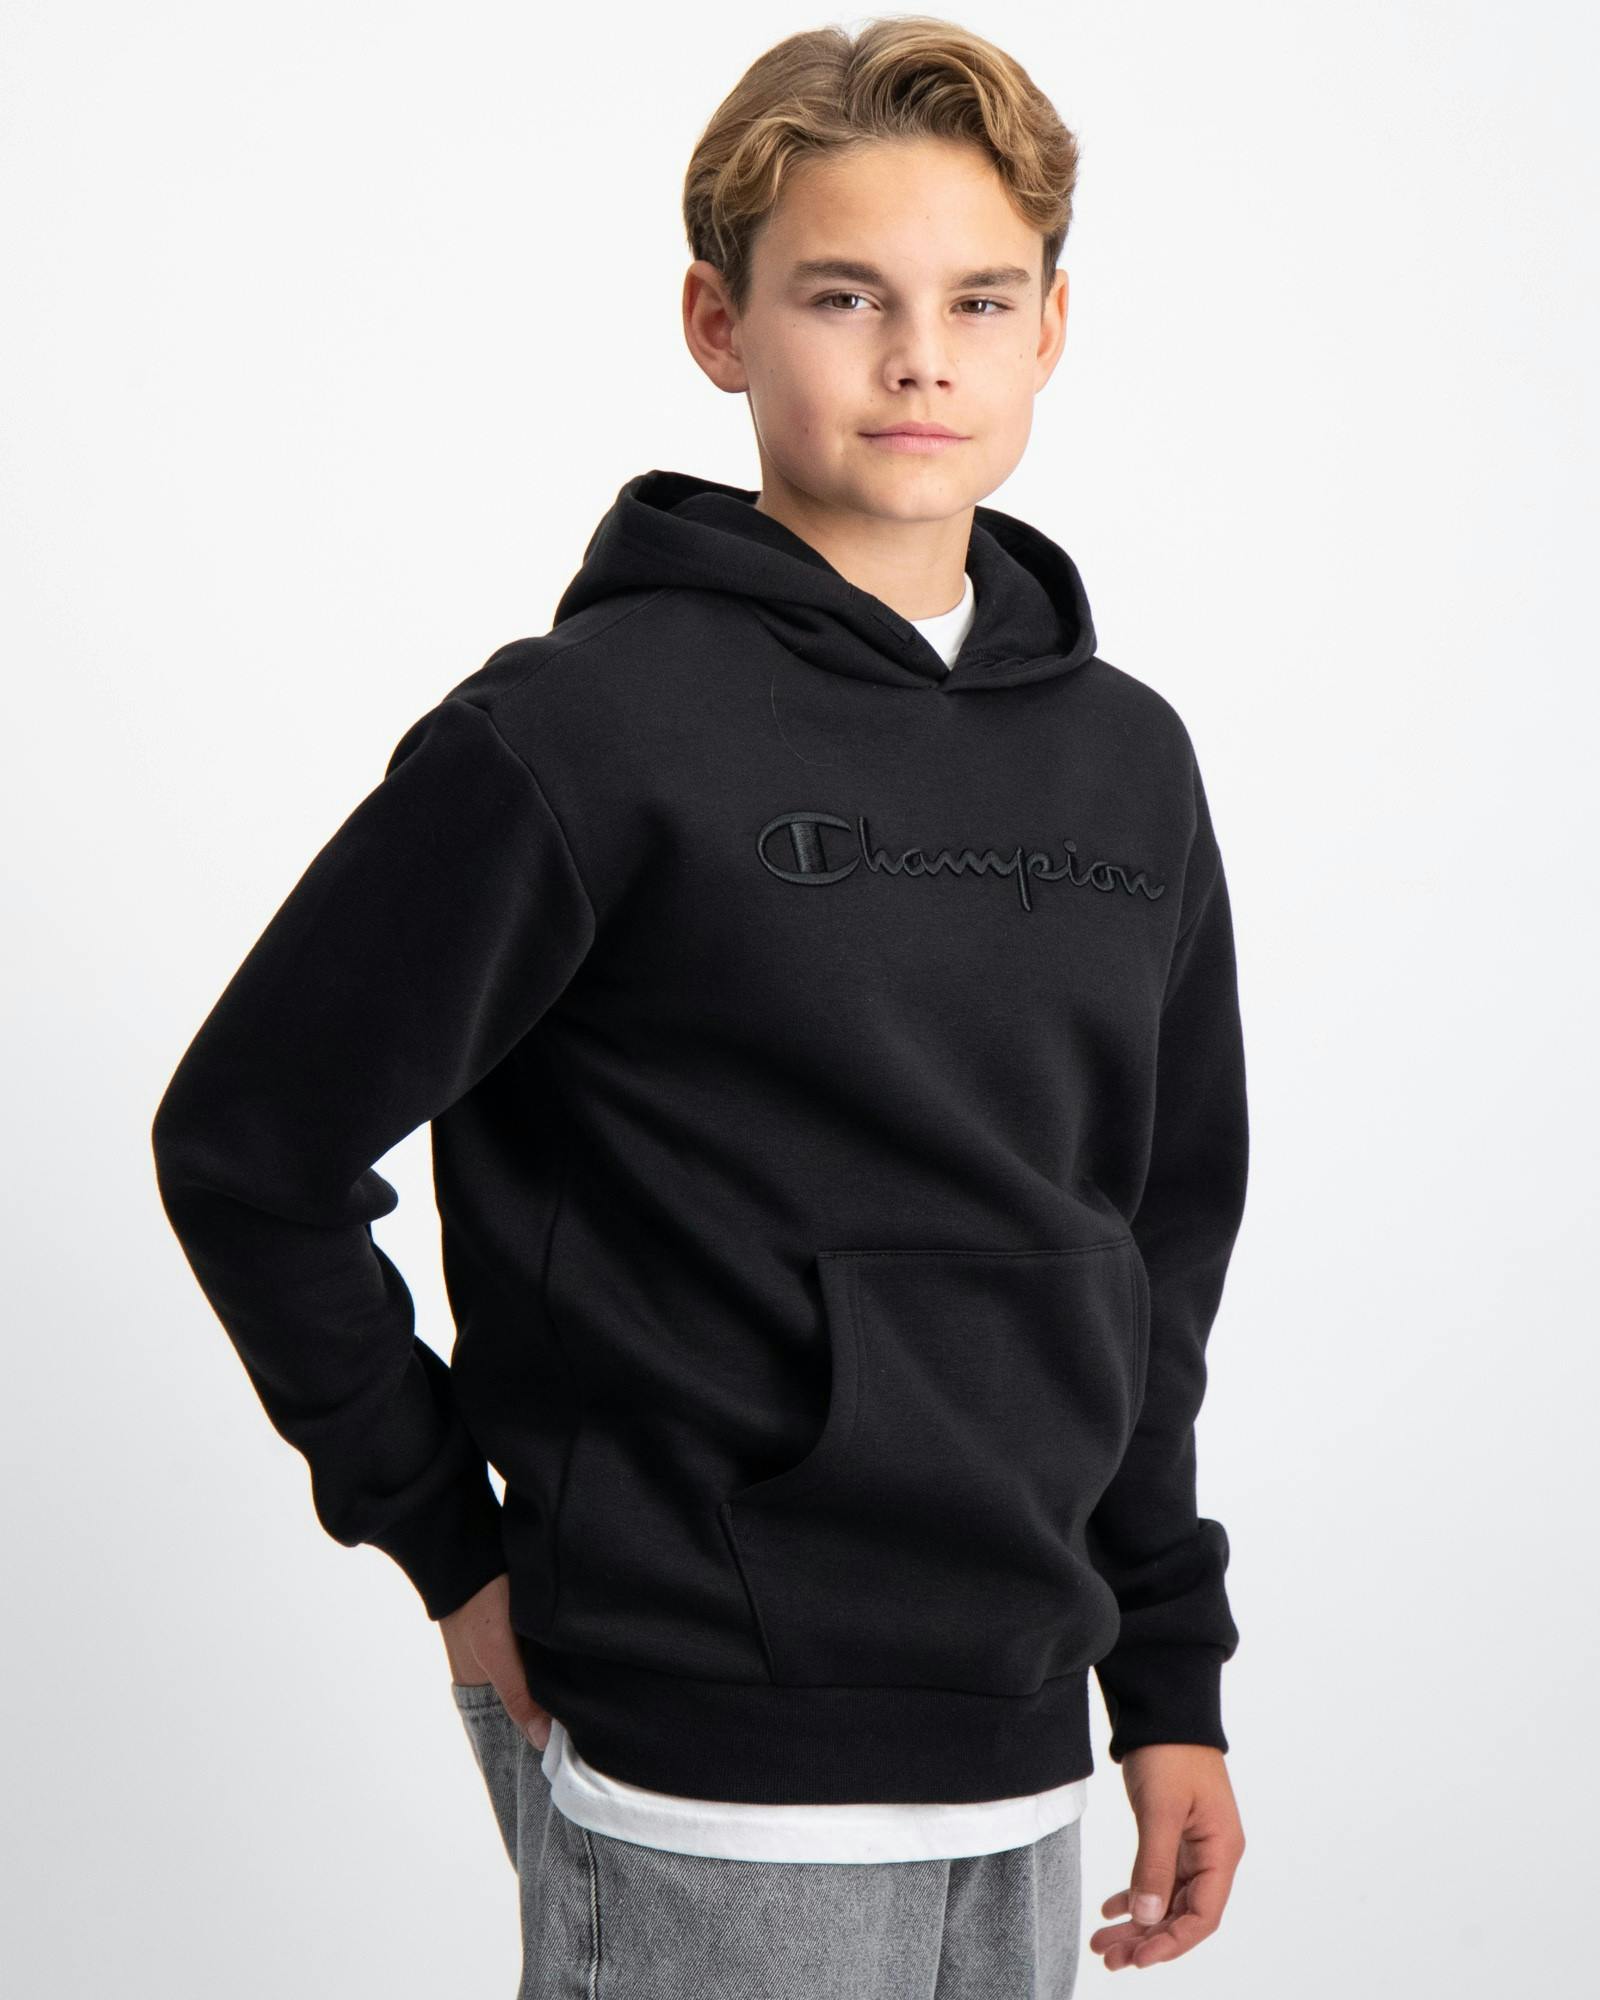 Schwarz Hooded Sweatshirt Jungen für Kids | Brand Store